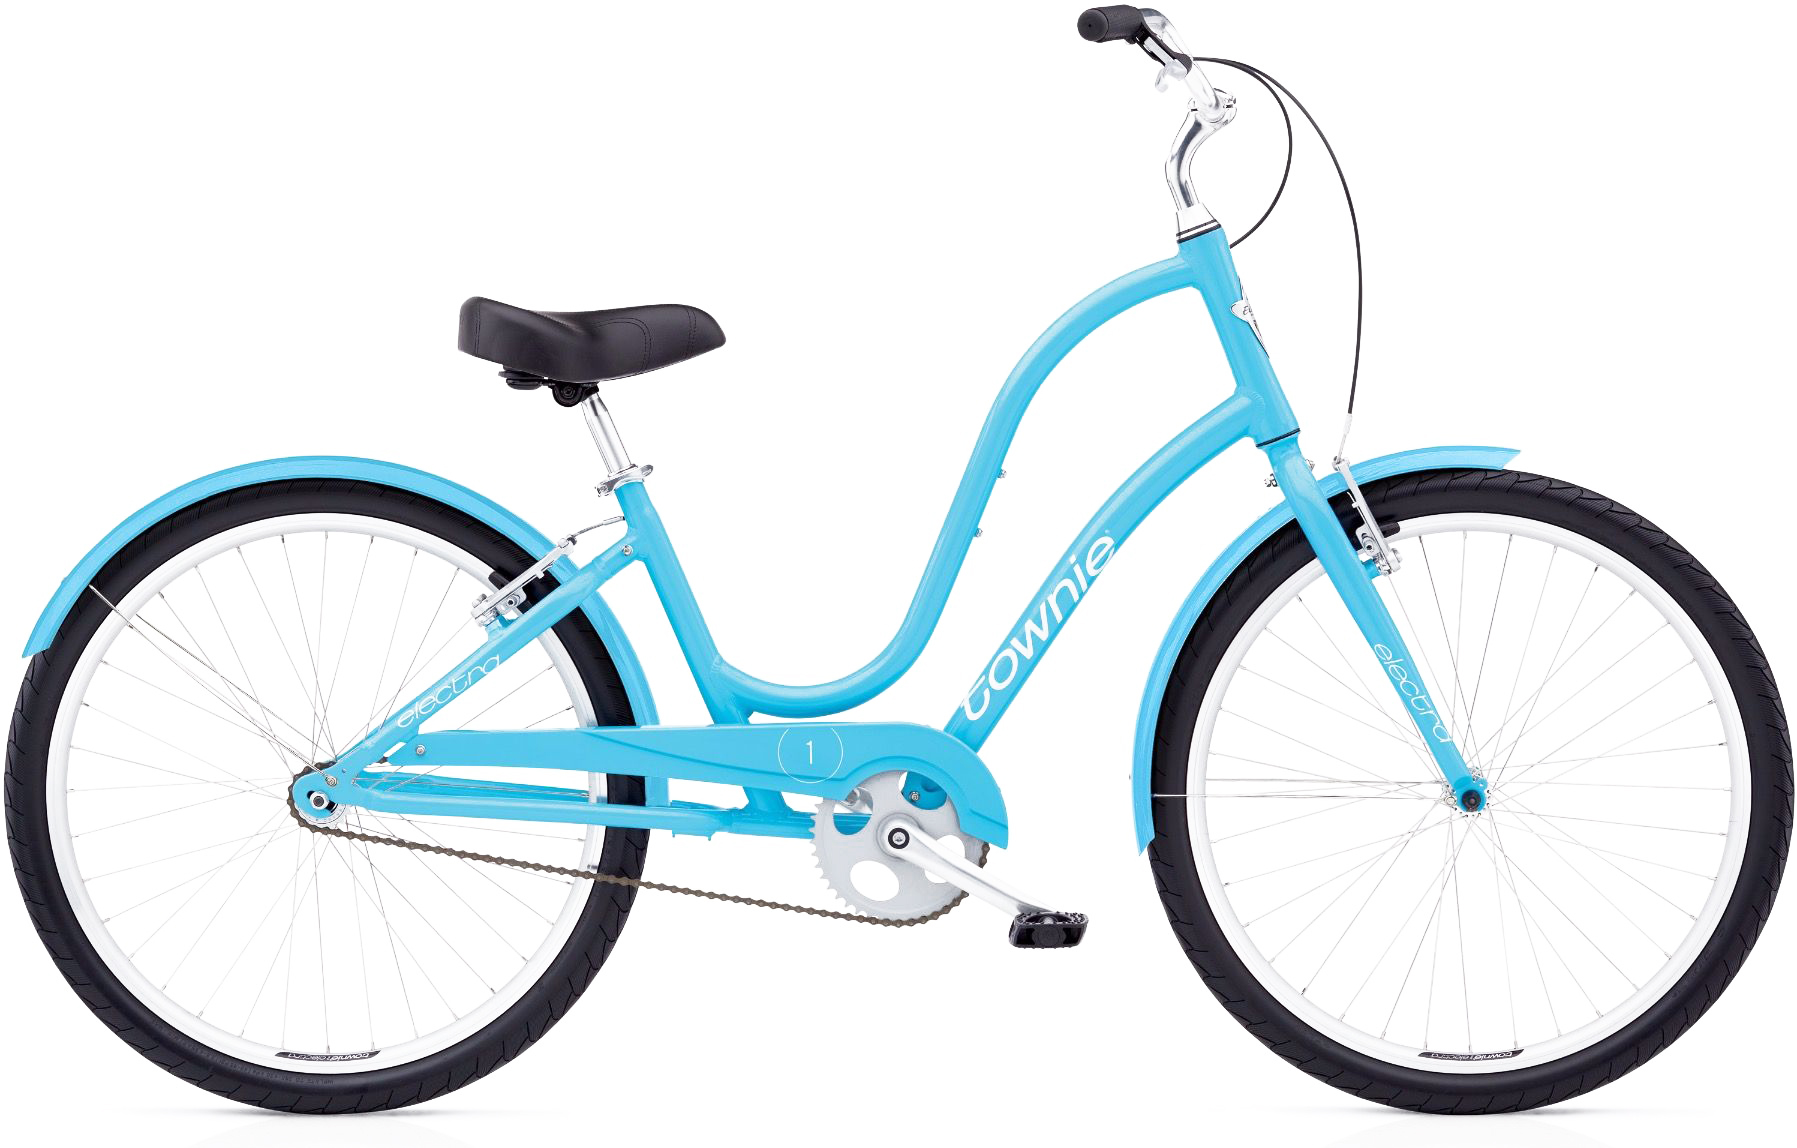  Отзывы о Городском велосипеде Electra Townie Original 1 2019